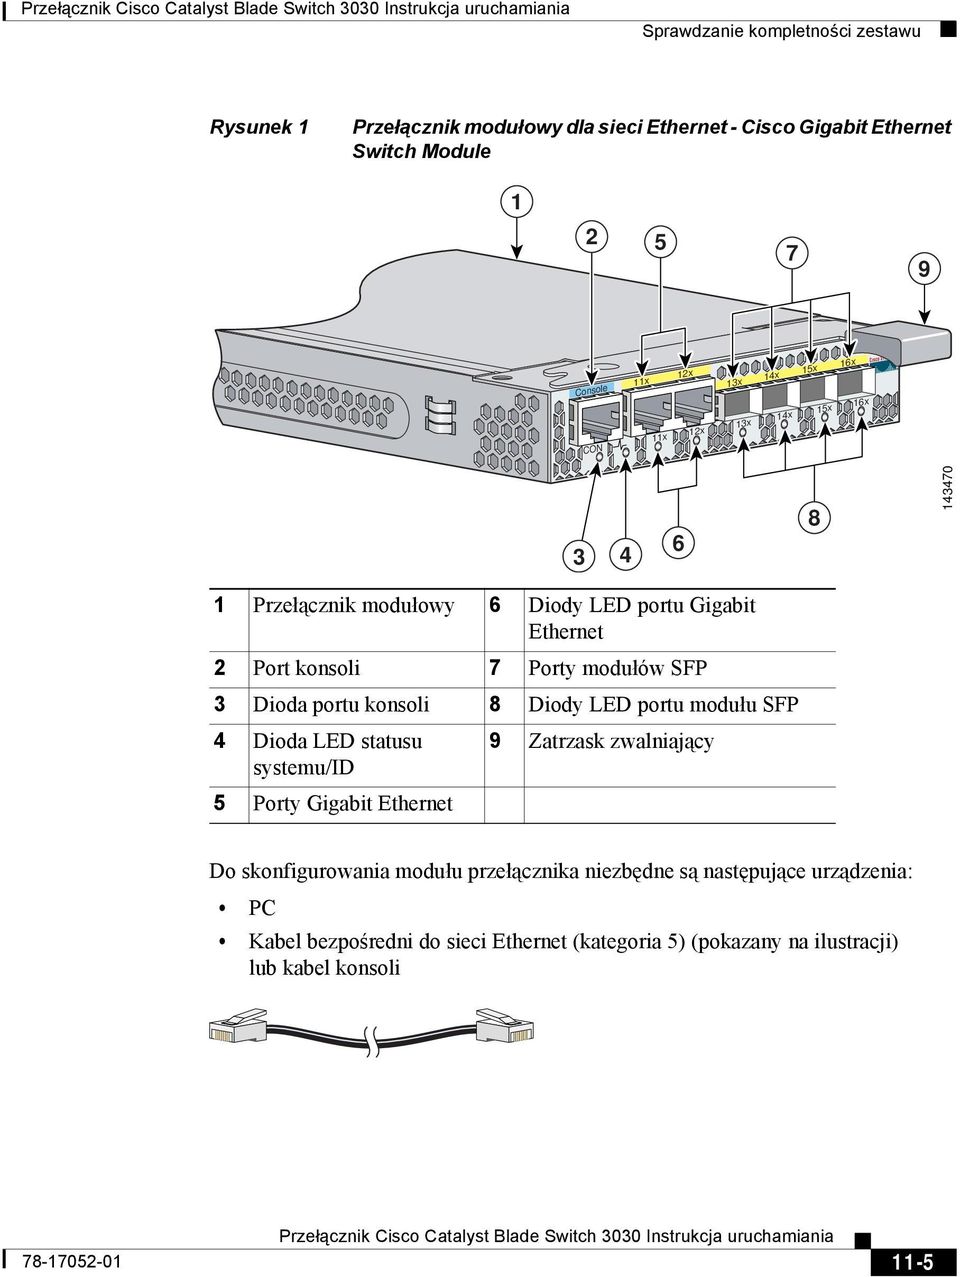 Dioda portu konsoli 8 Diody LED portu modułu SFP 4 Dioda LED statusu 9 Zatrzask zwalniający systemu/id 5 Porty Gigabit Ethernet Do skonfigurowania